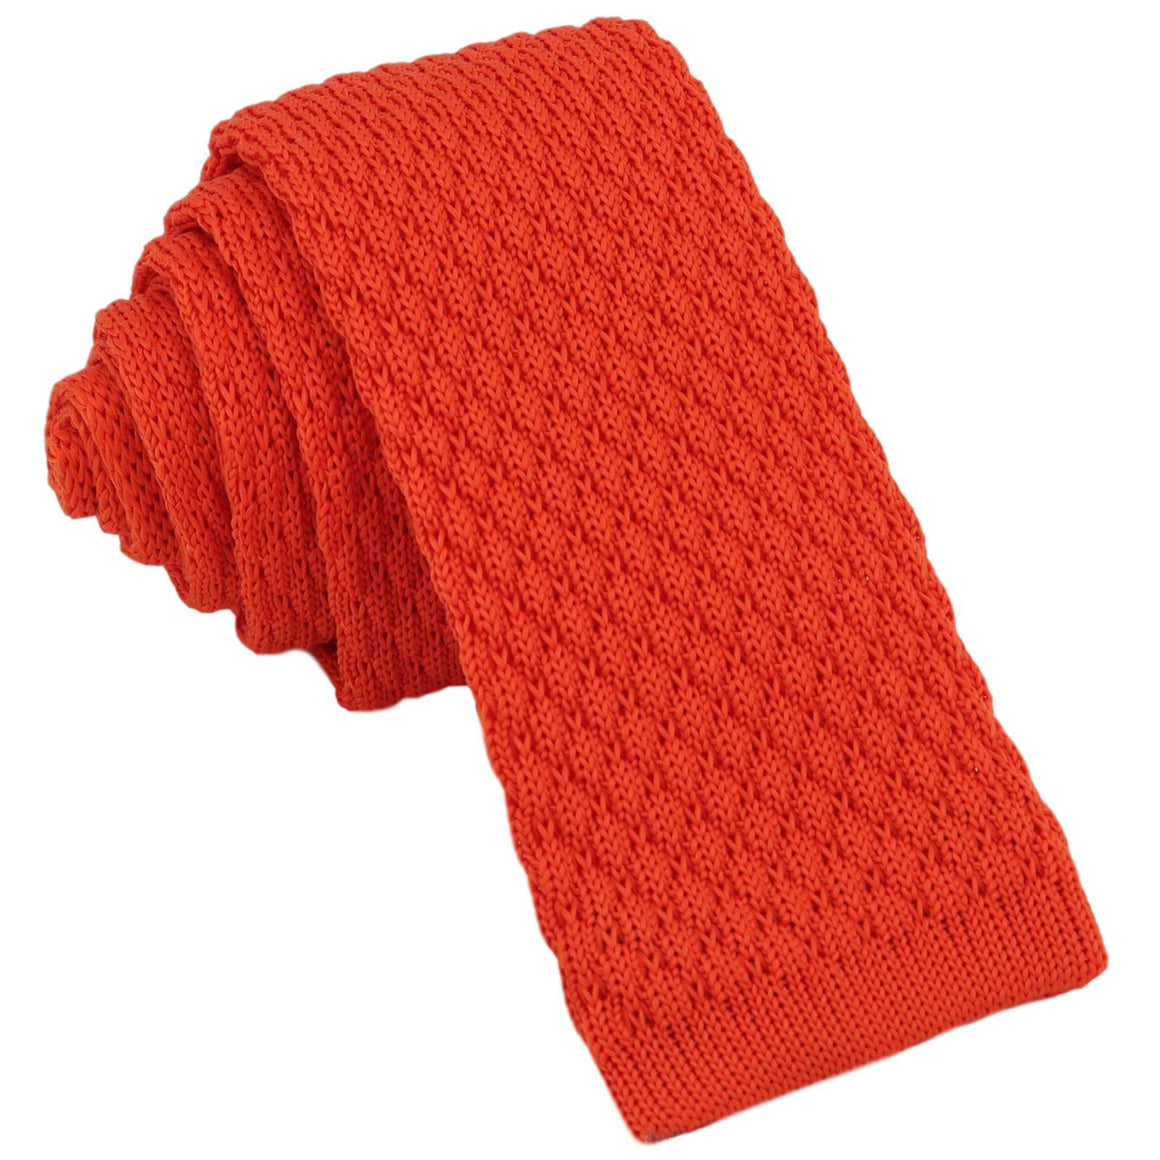 GASSANI 6cm úzká korálově-oranžová pánská pletená kravata, vlněná kravata, rovný střih